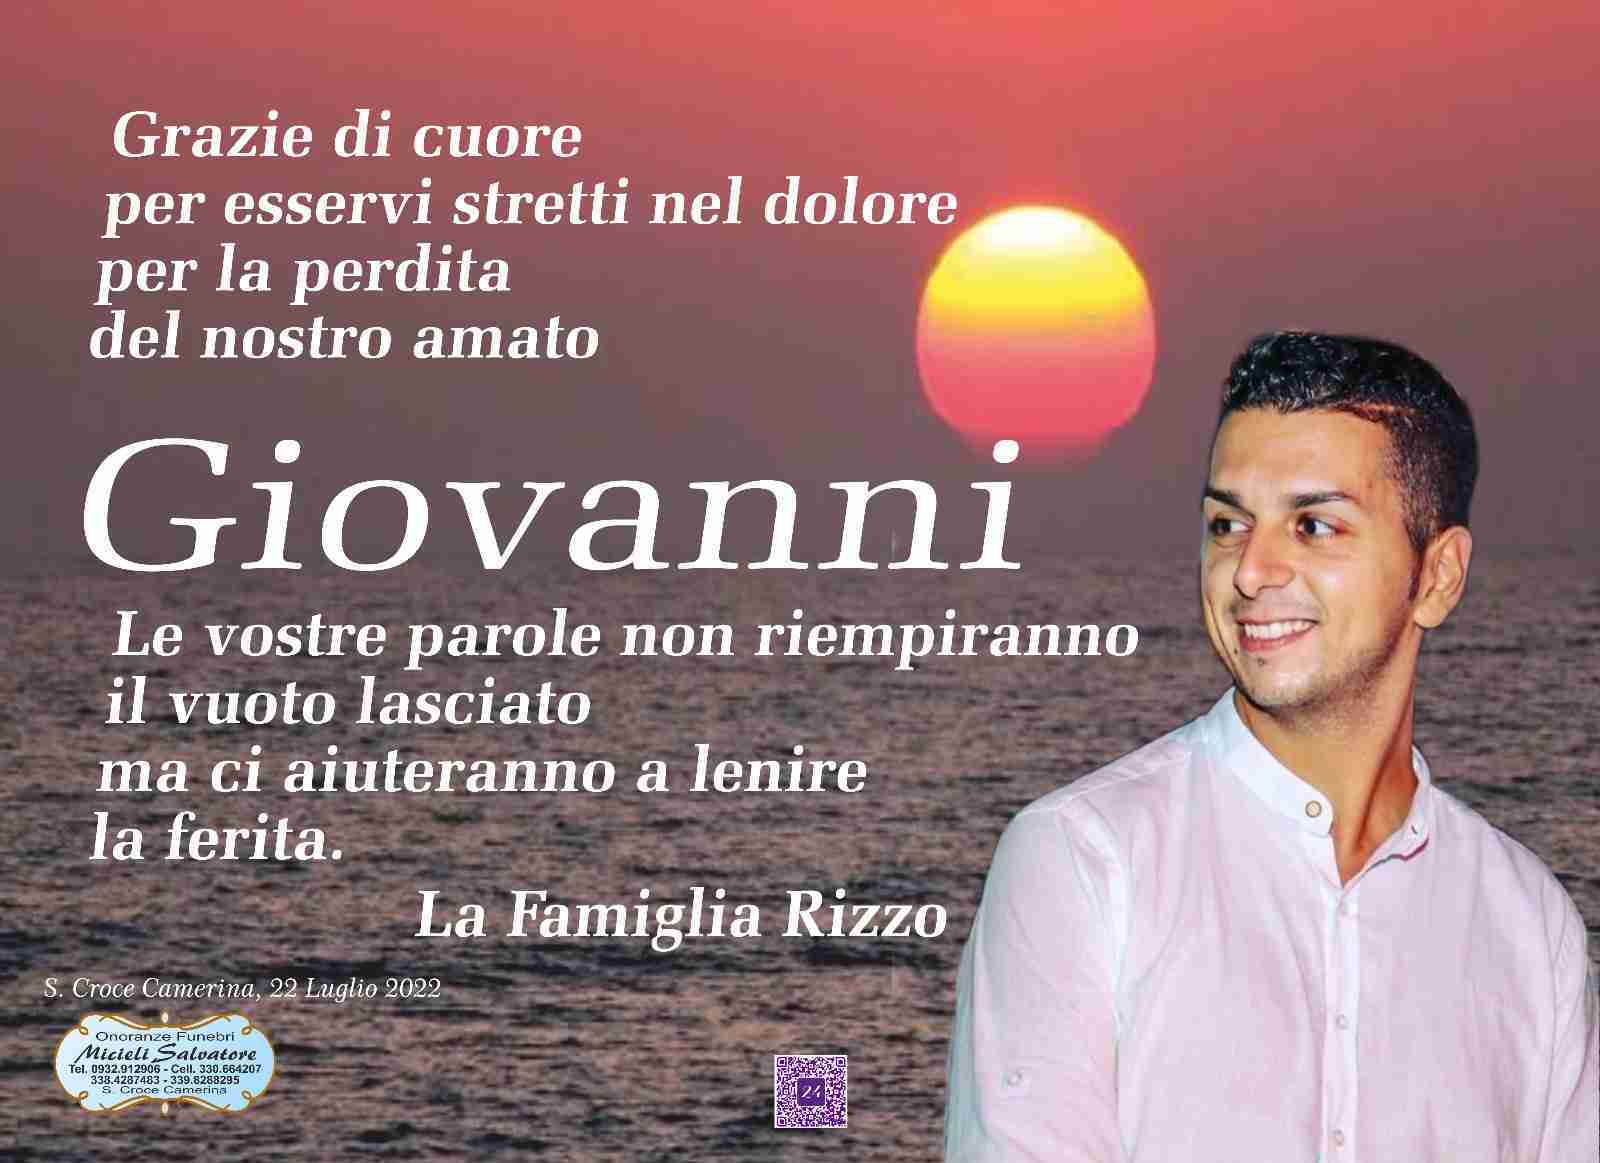 Giovanni Rizzo